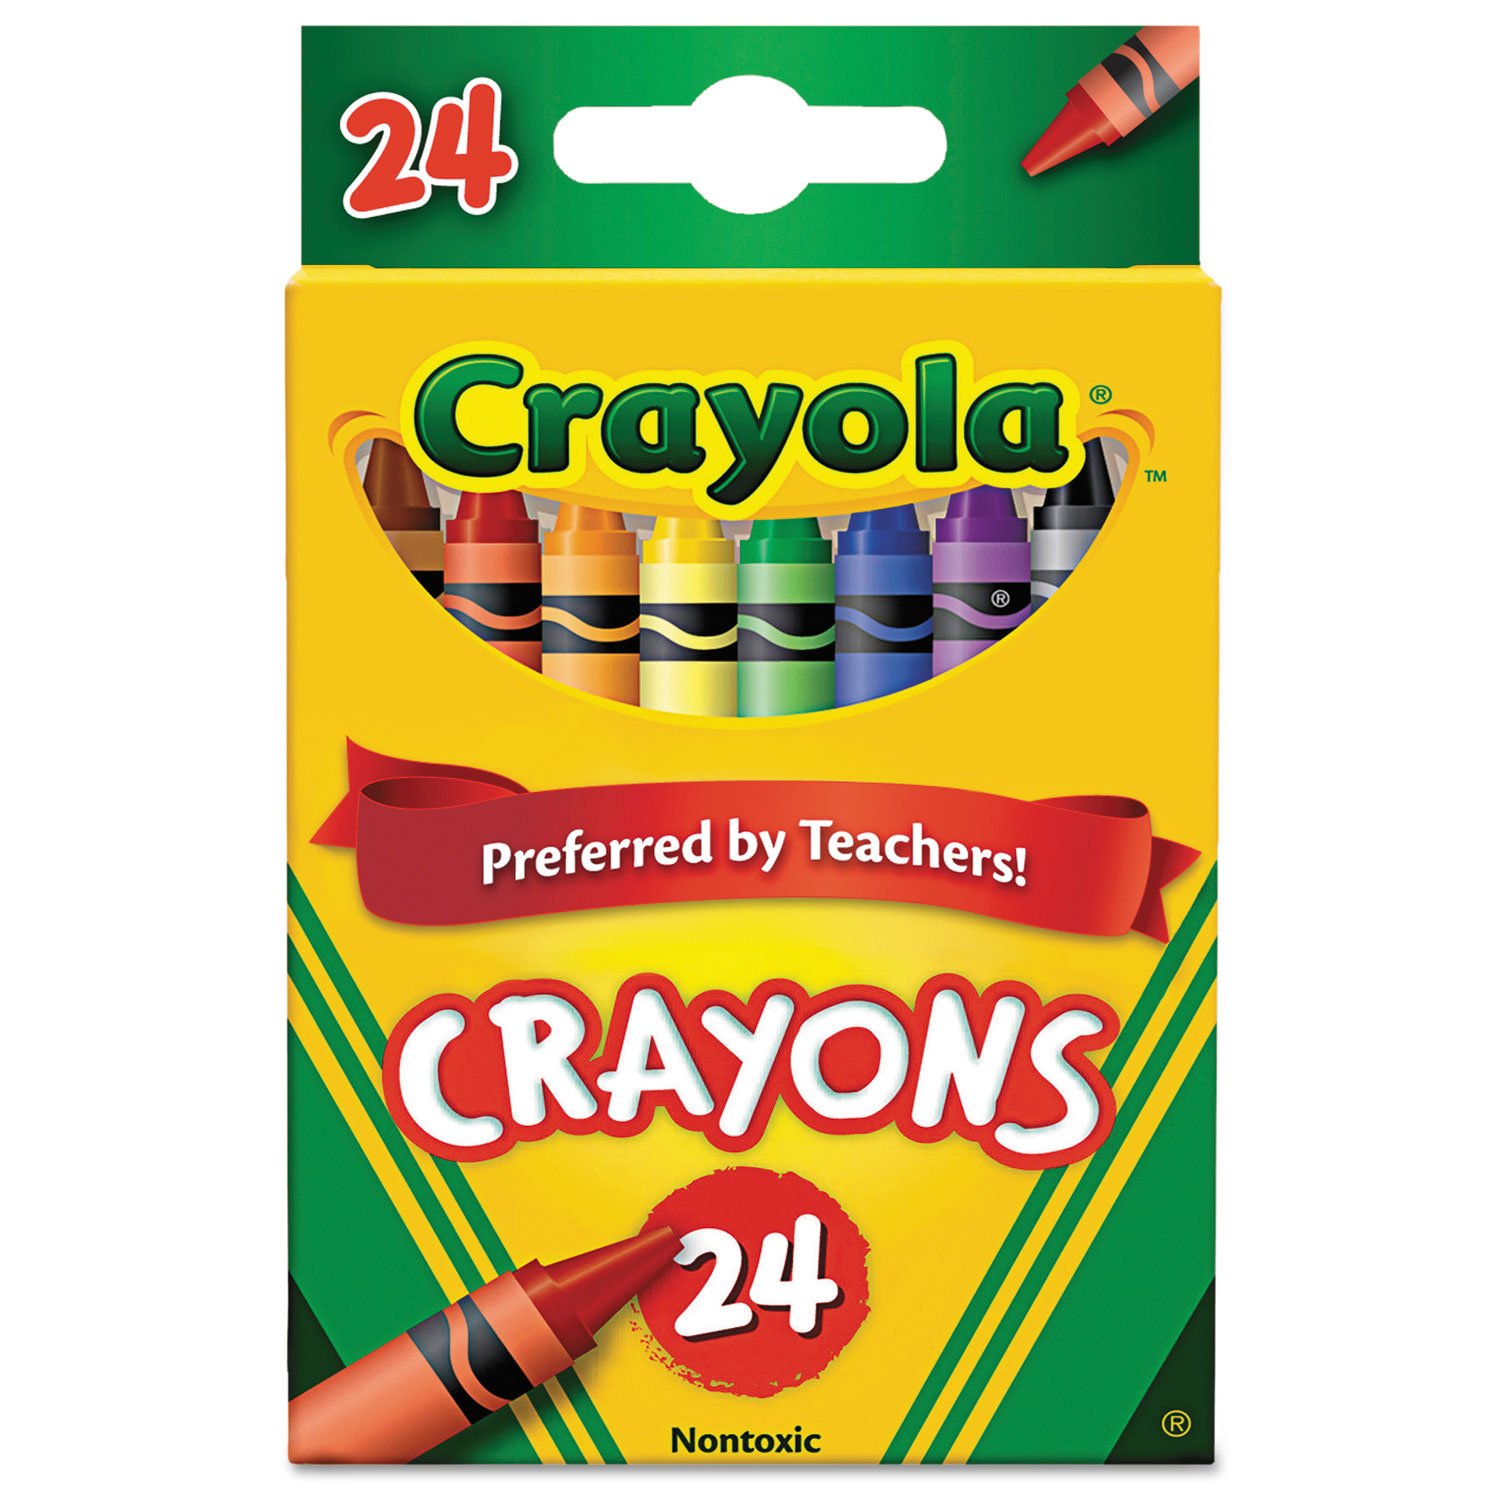 Crayones Crayola Estándar 9.21 cmx.7.9 c Coloración más fácil y colores más reales, colores varios                                                                                                                                                                                                       m 24 piezas                              - 523024